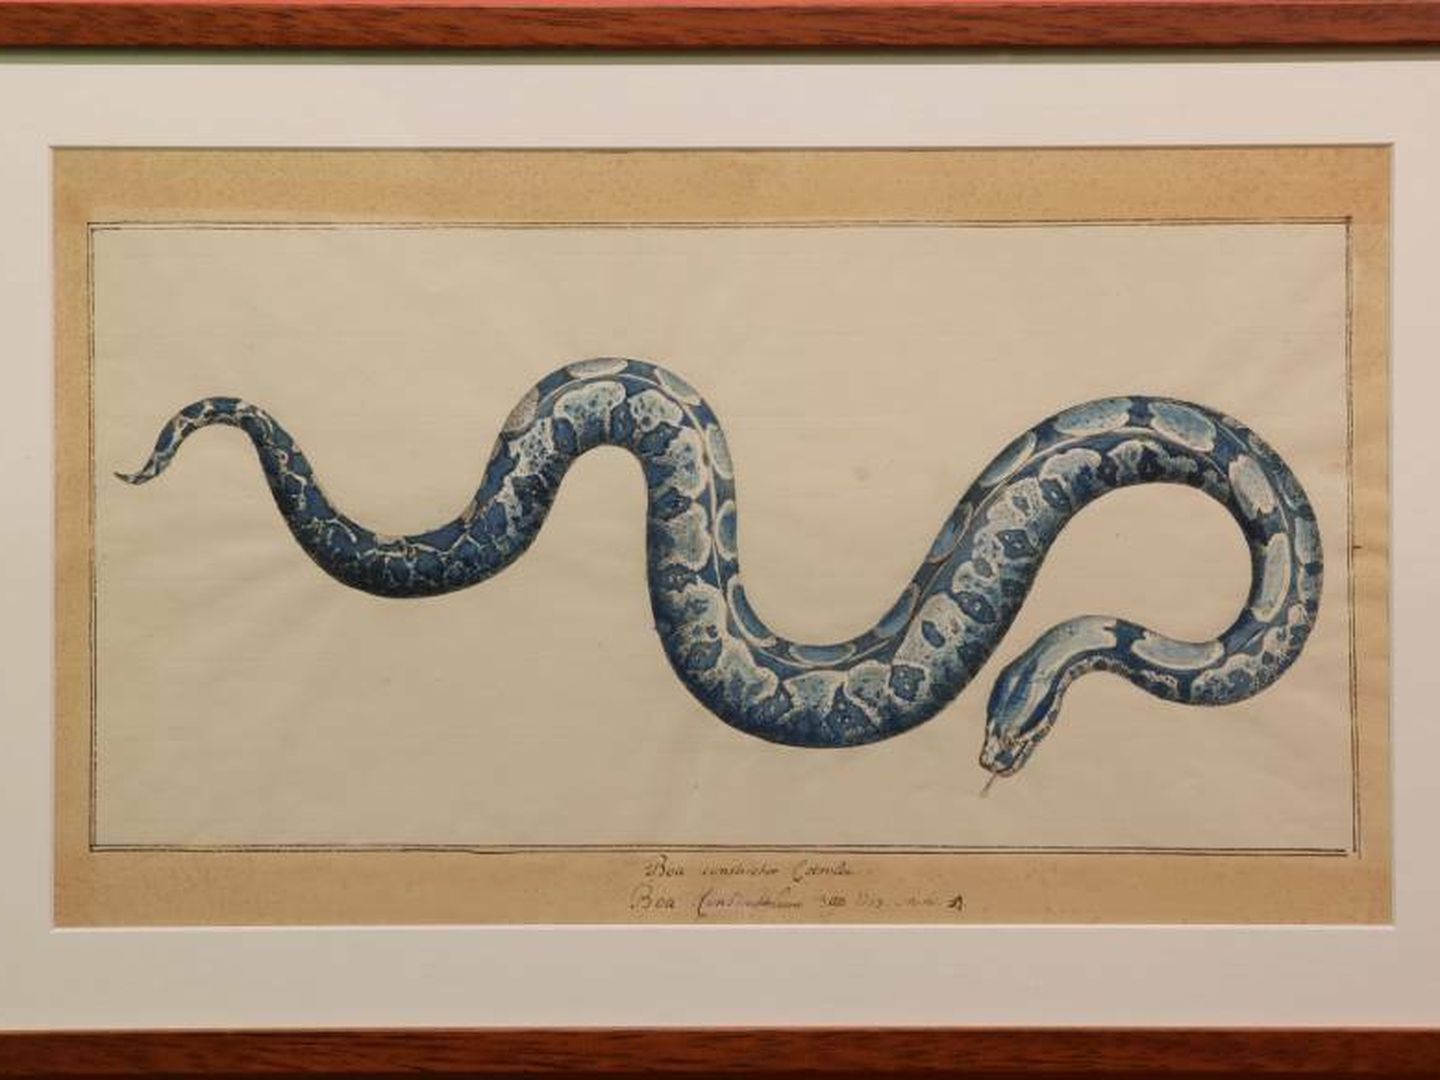 Estampa de una boa constrictora (Boa constrictor) del zoólogo neerlandés Albertus Seba (1665-1736). (Archivo del Museo)